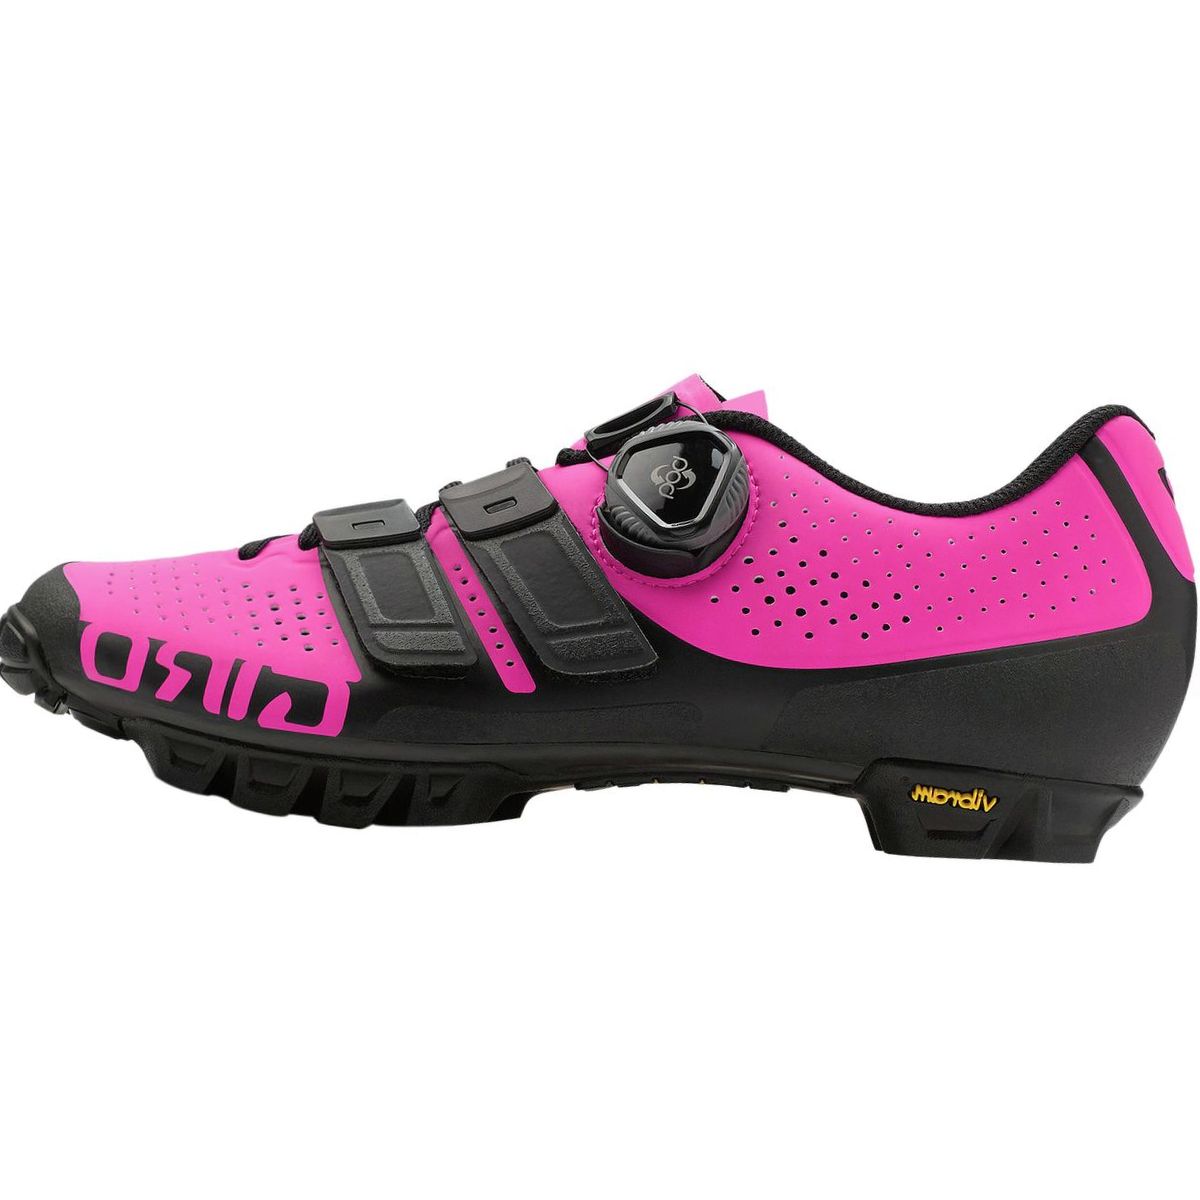 Giro Sica Techlace Cycling Shoe - Women's